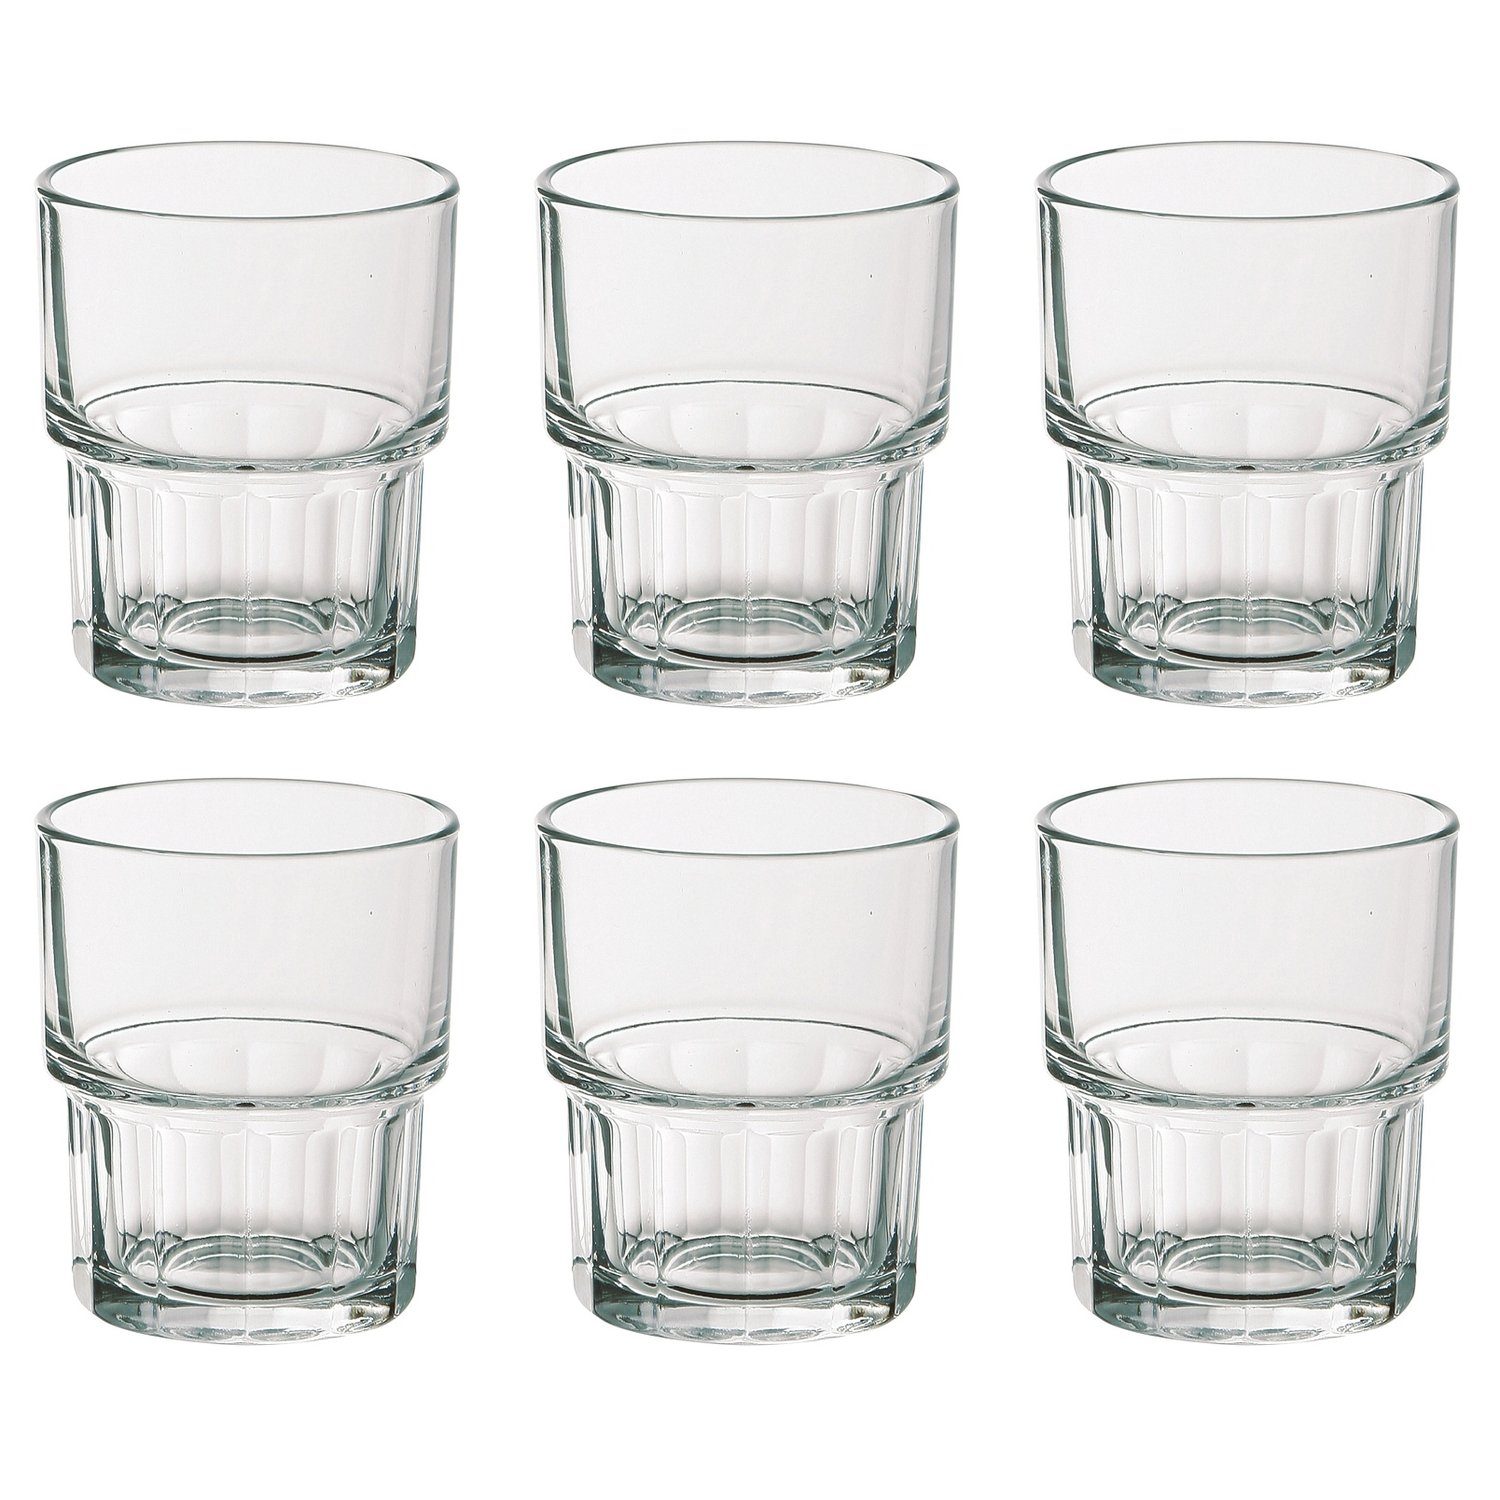 Glas Wasserglas/Saftglas 100 Becher EDUPLAY ml,